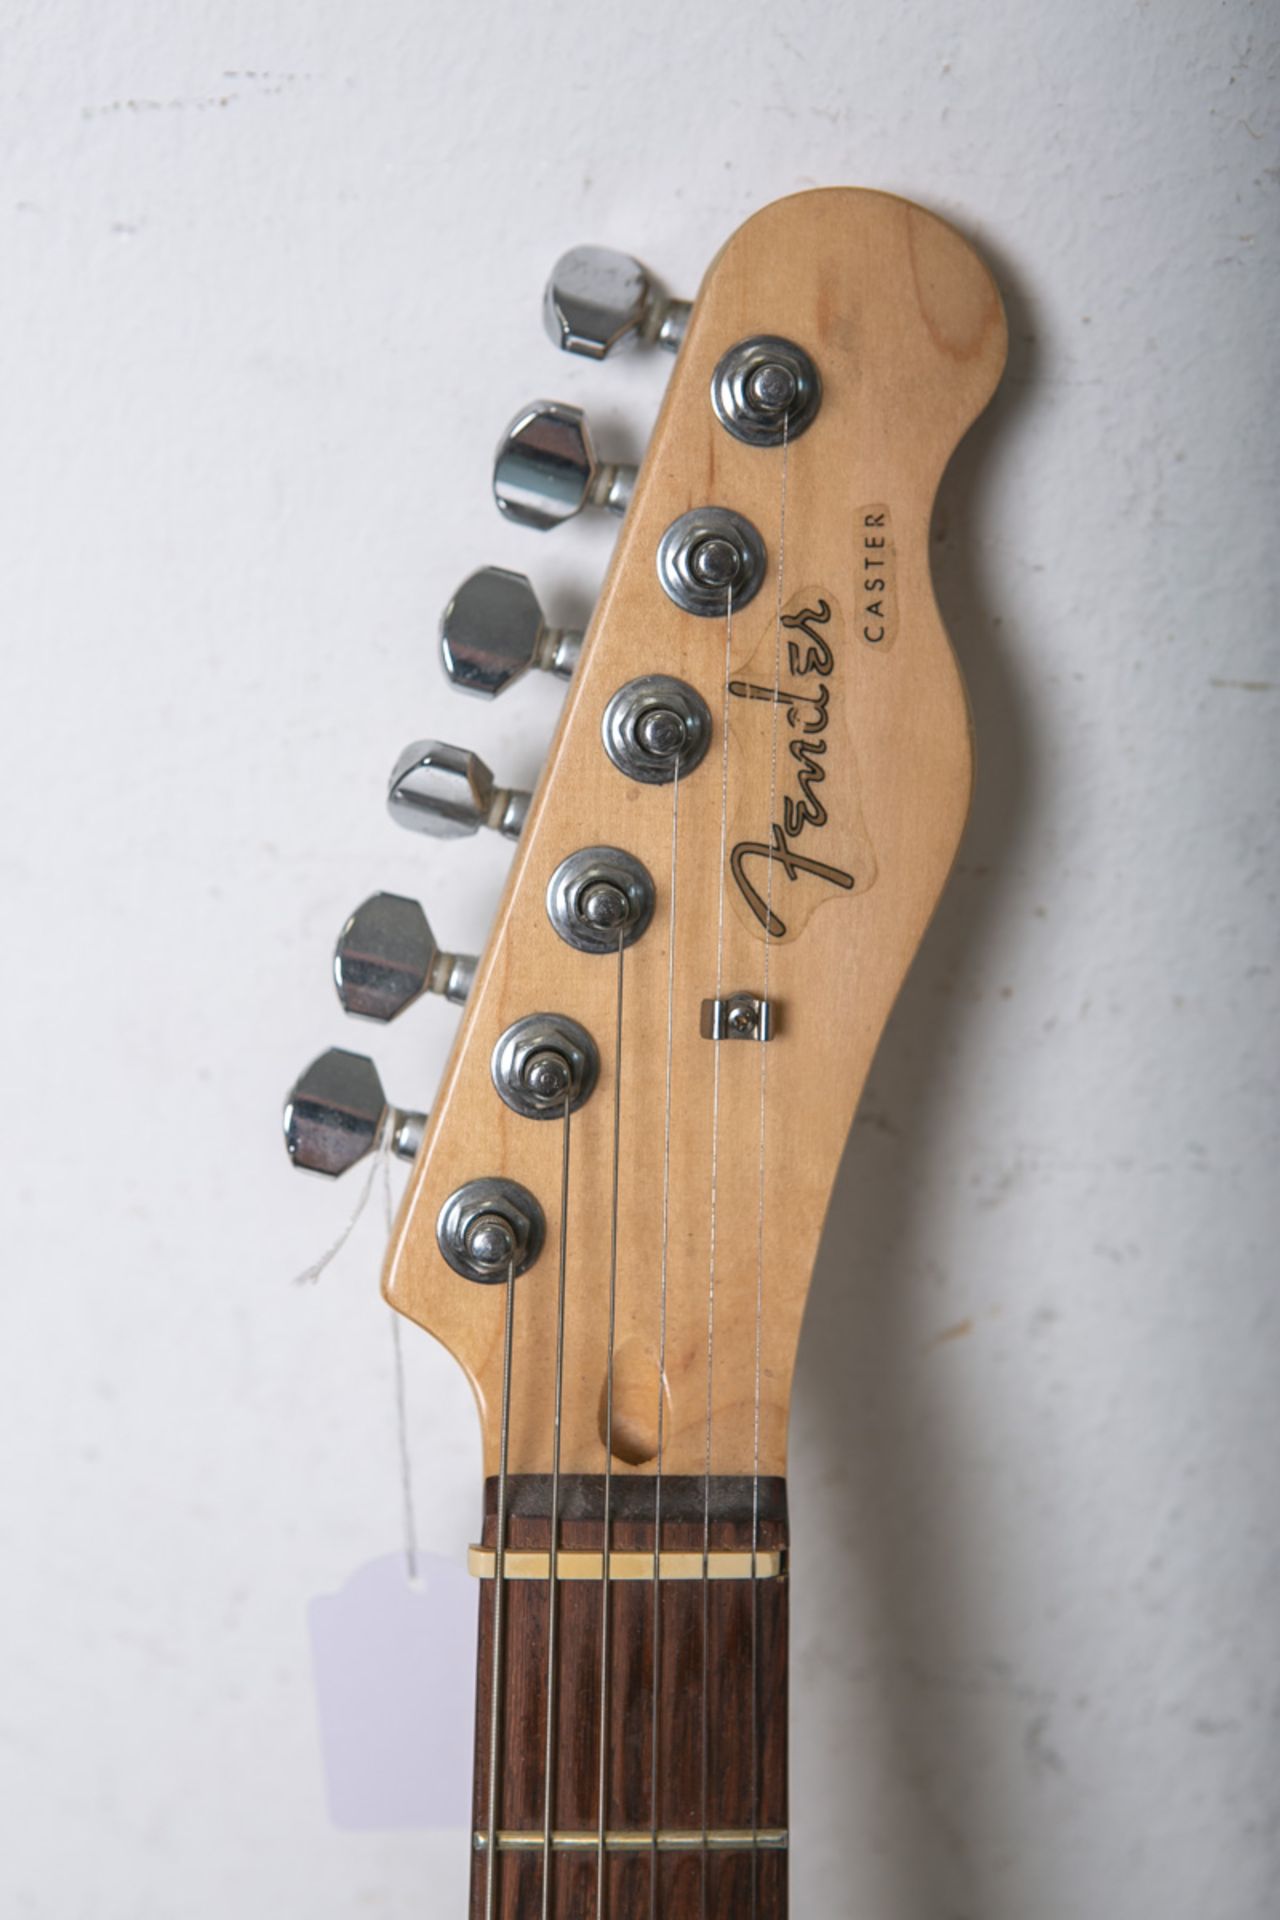 Semi-Hollowbody E-Gitarre "Fender Caster" - Image 4 of 4